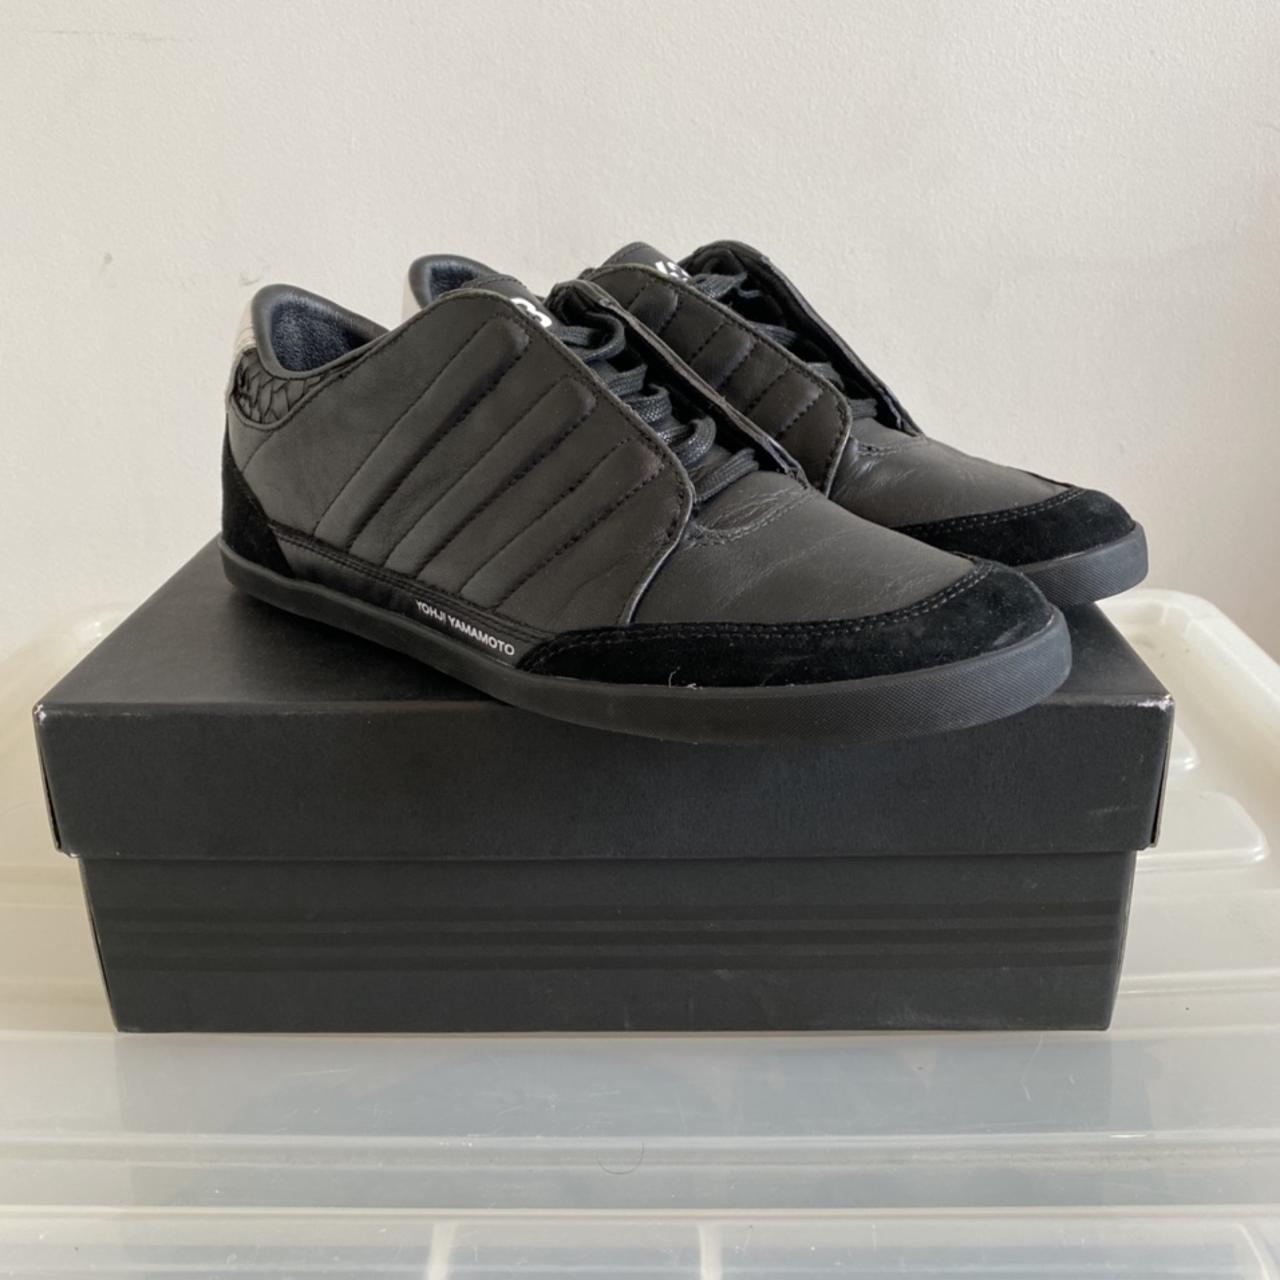 Adidas Y3 Honja Low Black leather / black... - Depop